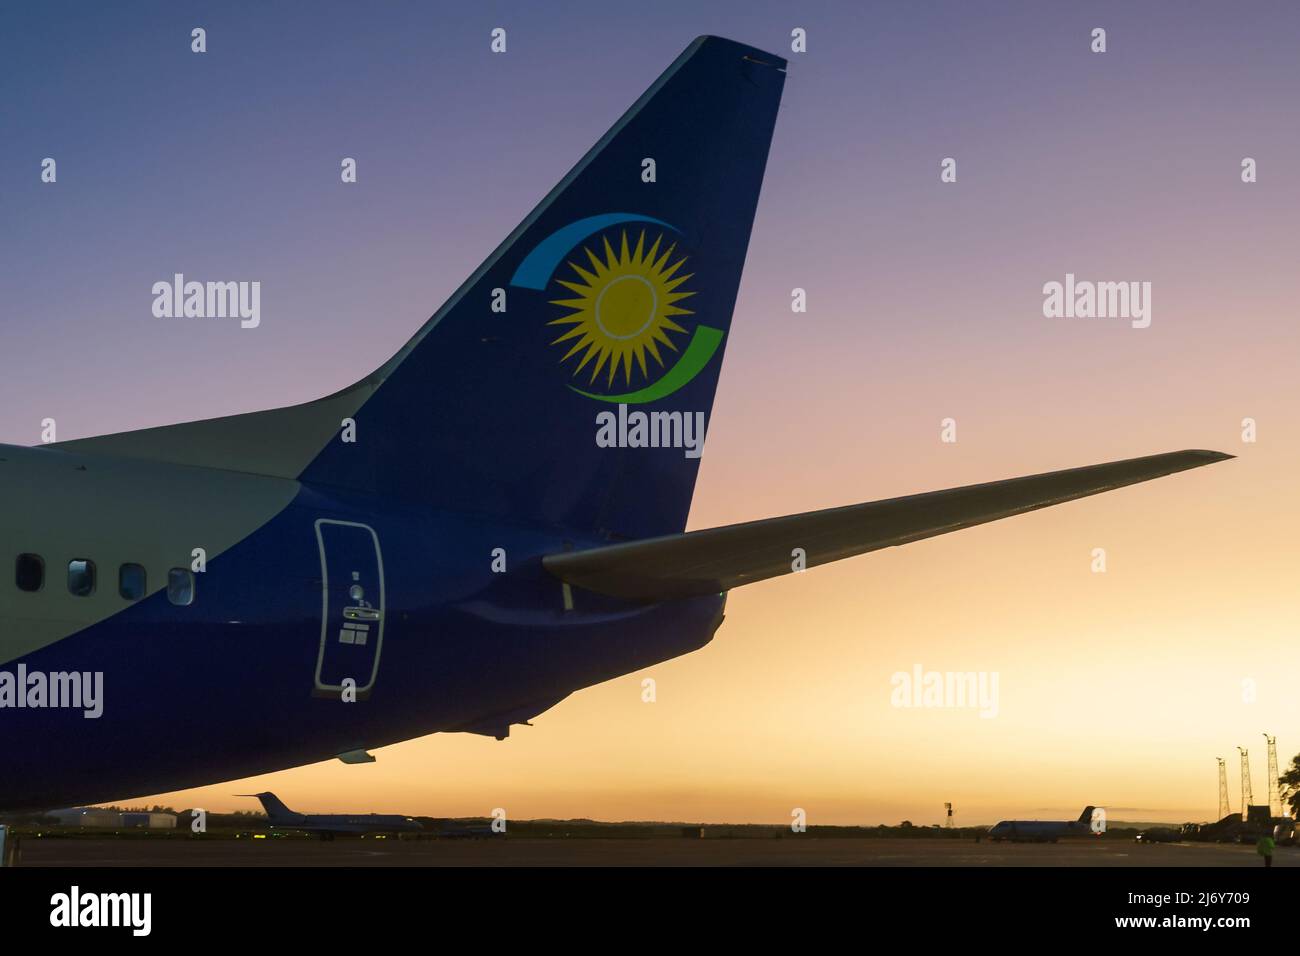 Das Heck des Ruandair Boeing 737-Flugzeugs. Flugzeug B737 der Rwandair Airlines bei Sonnenuntergang. Leerstand des Flugzeugs. Stockfoto